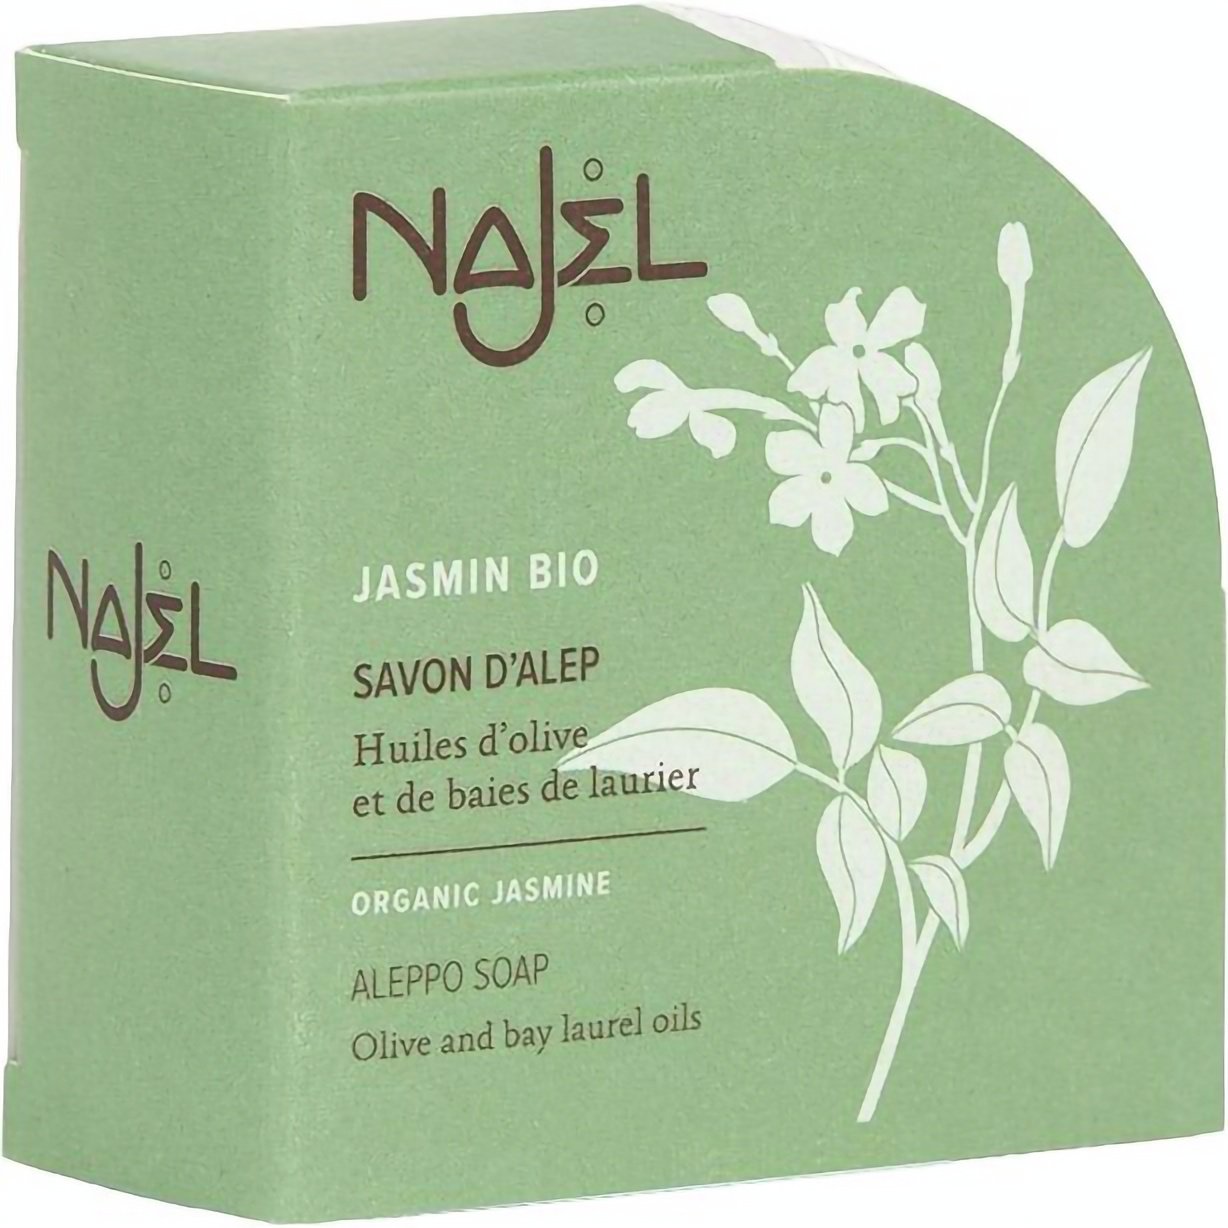 Алеппское мыло Najel Aleppo Soap Organic Jasmine с органическим жасмином 100 г - фото 1